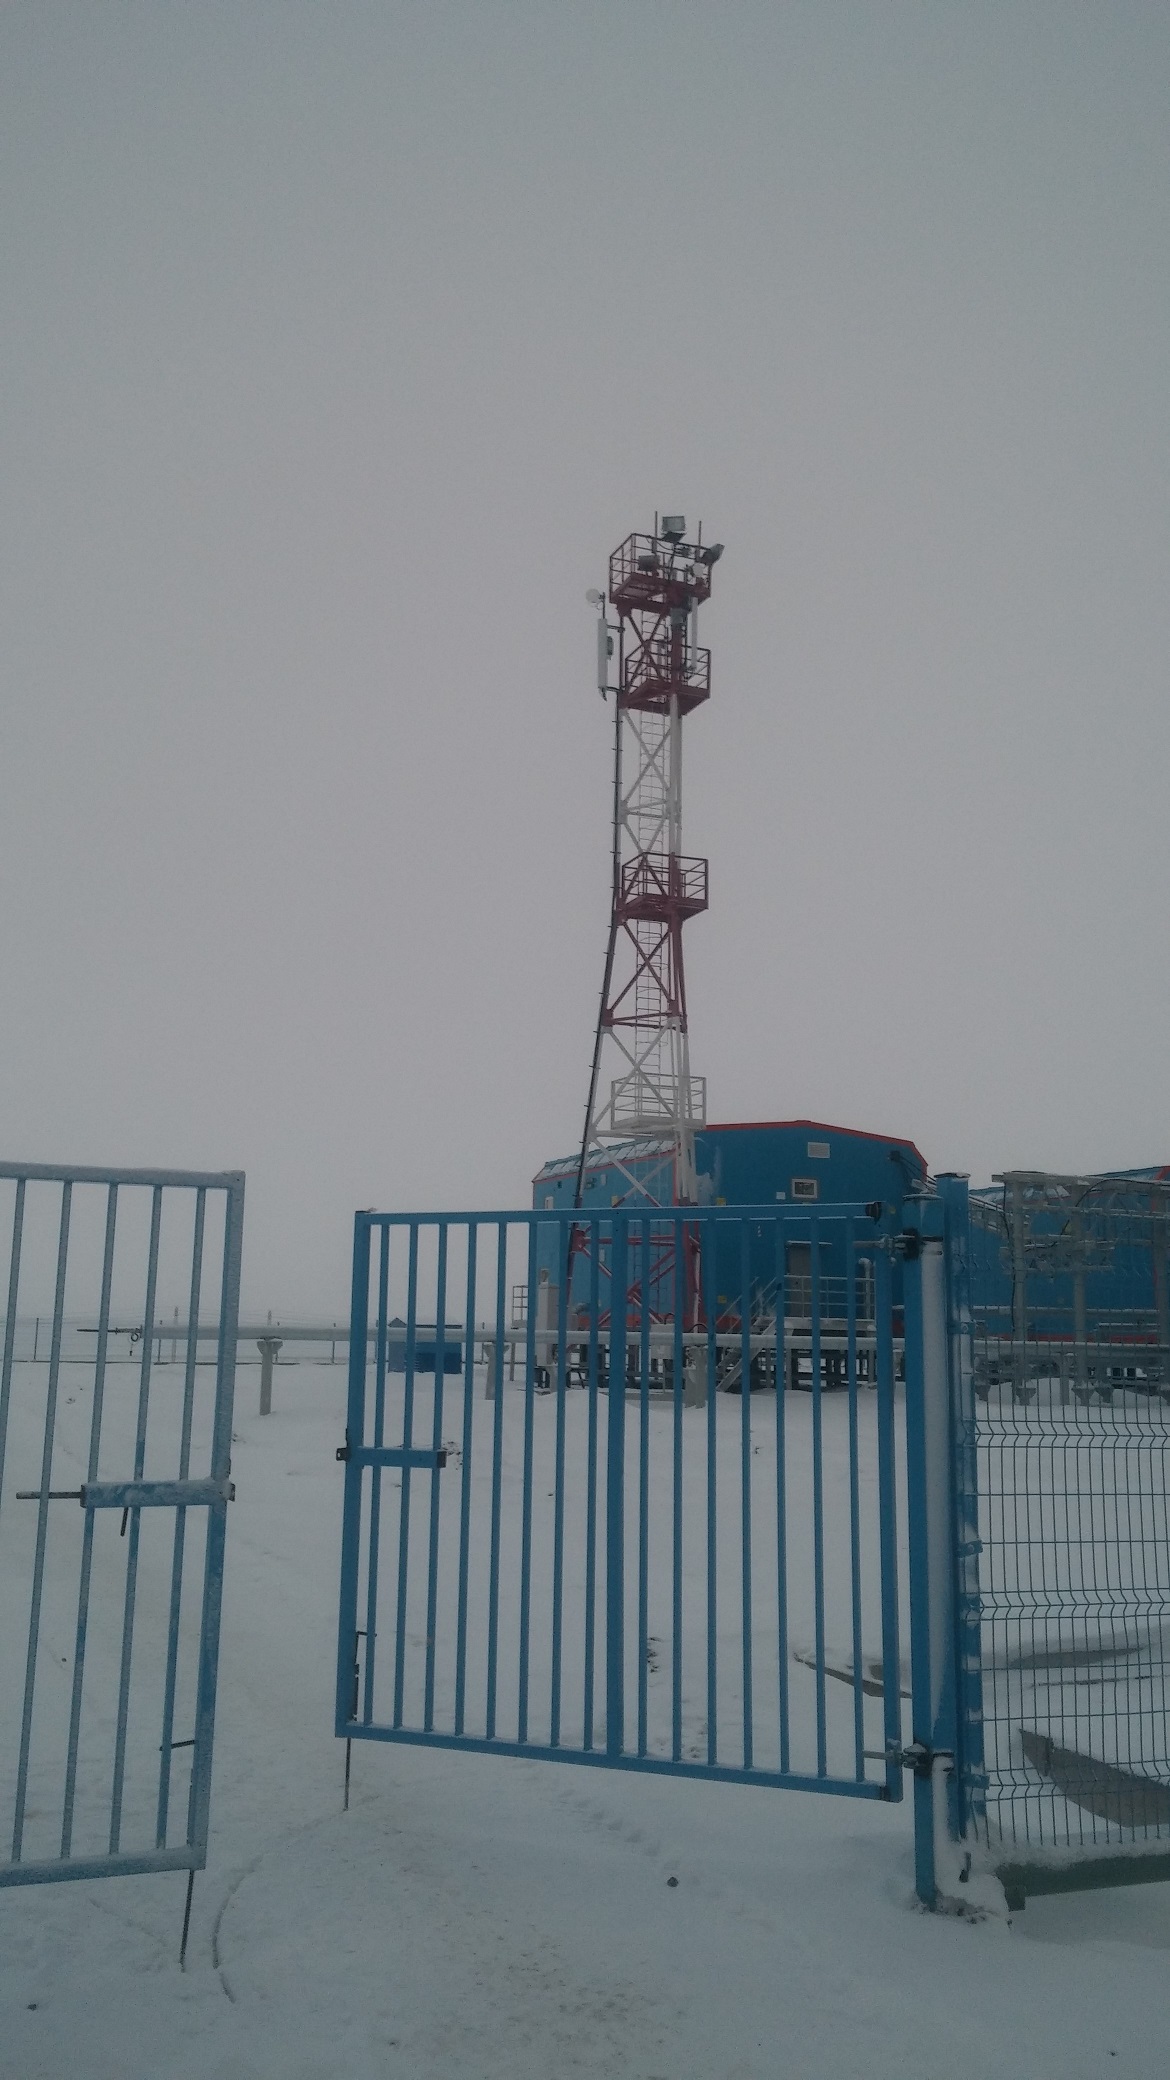 ТОП-5 базовых станций МегаФона в необычных местах России. Рис. 5